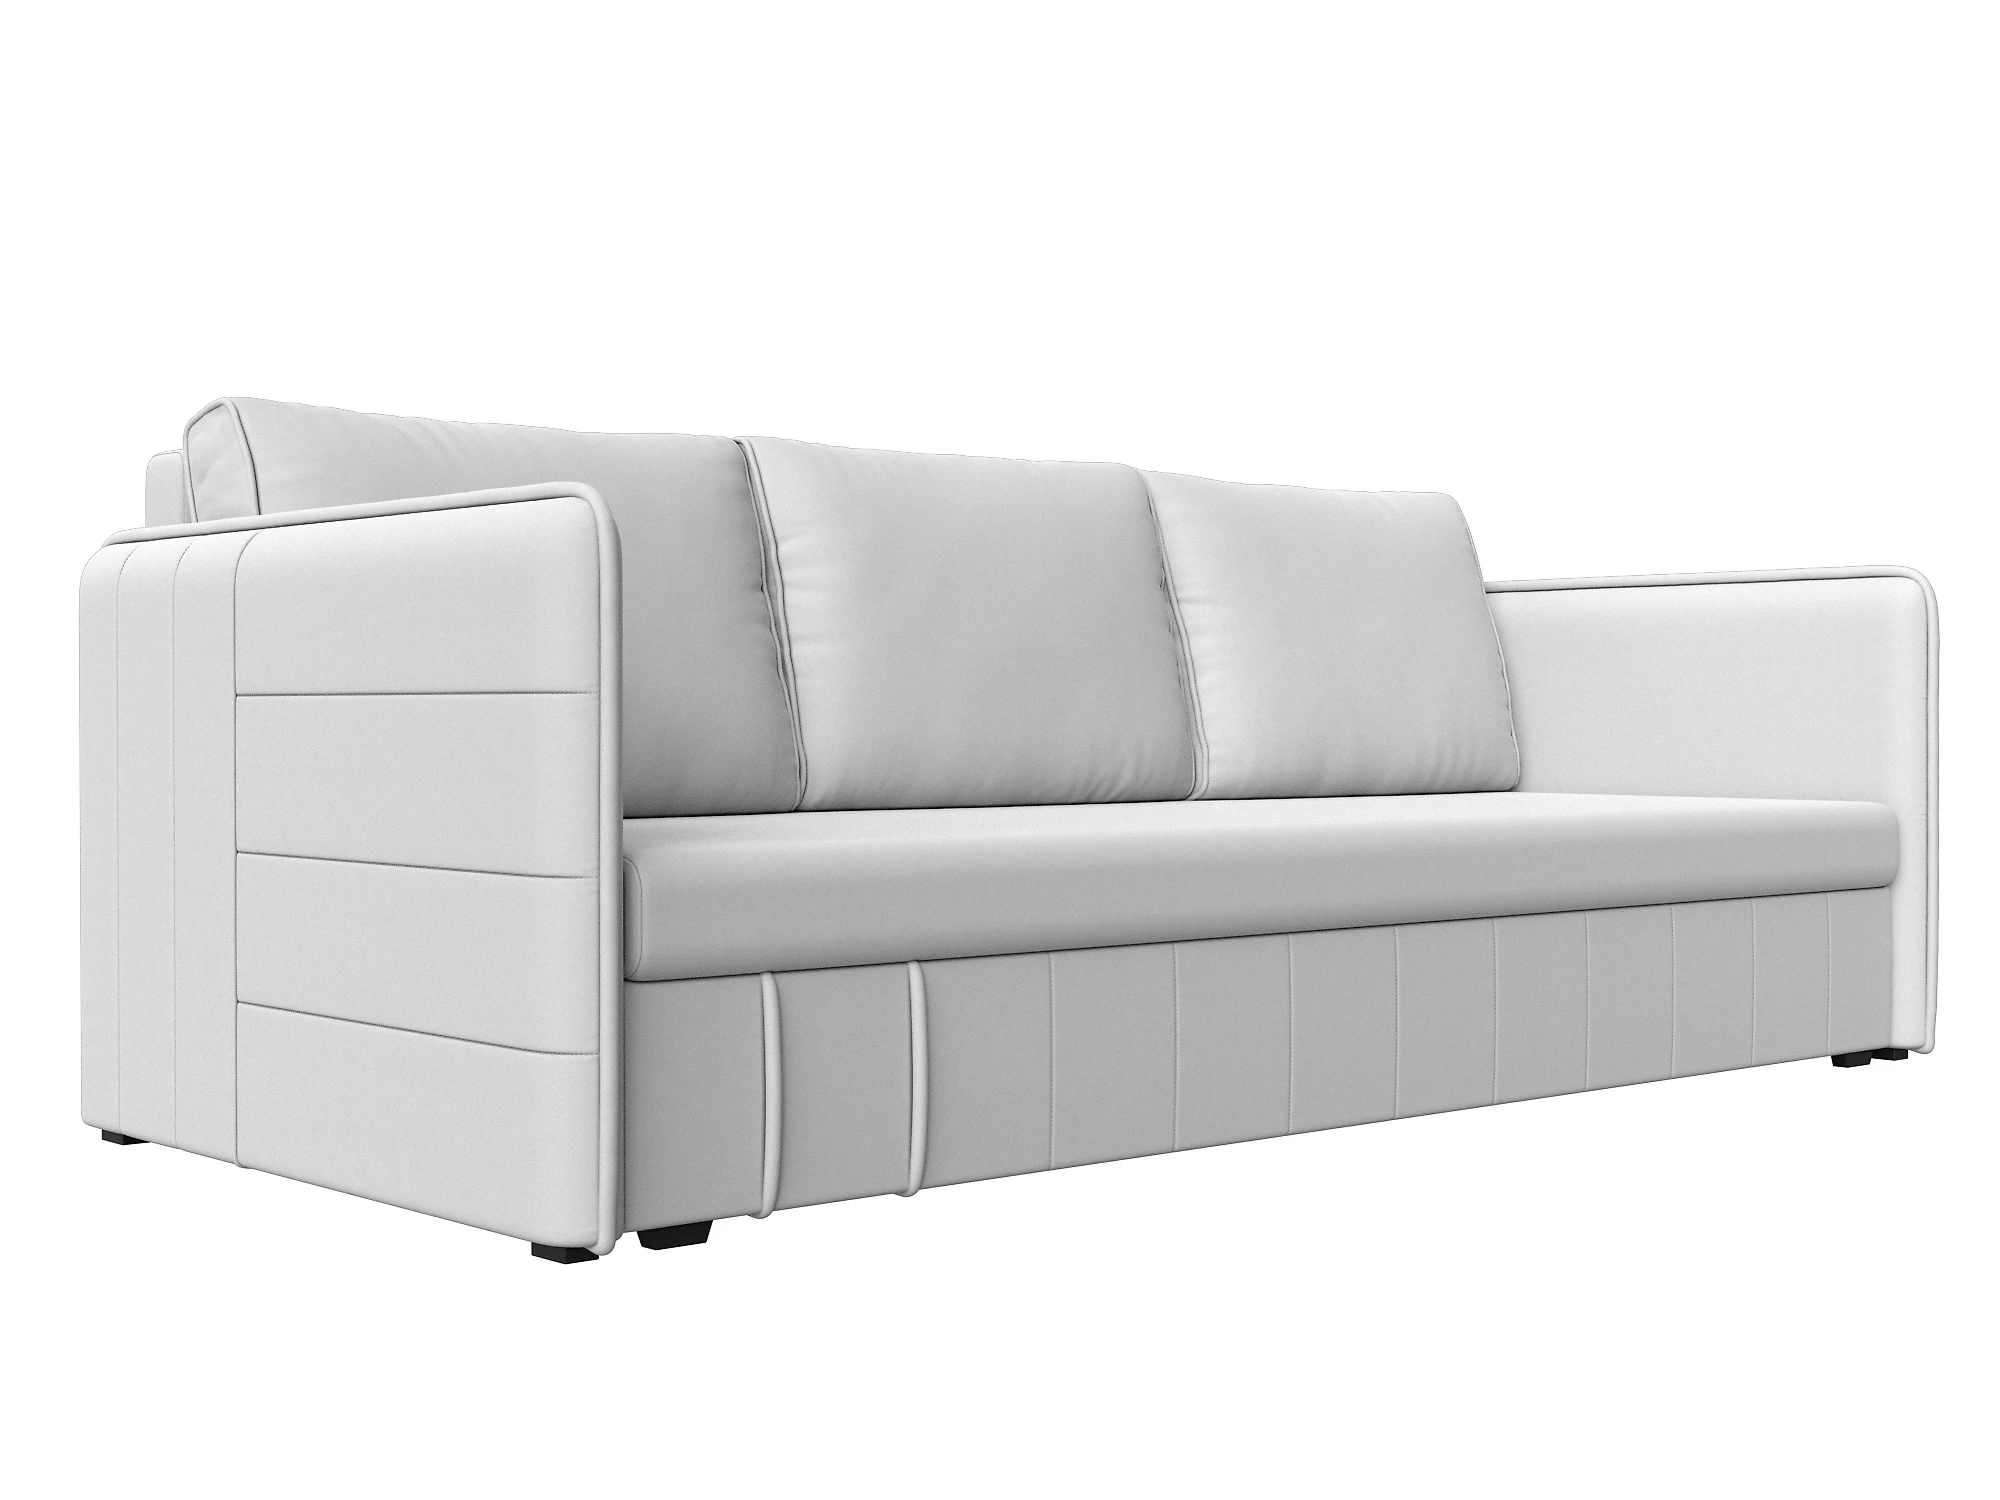  кожаный диван еврокнижка Слим Дизайн 15